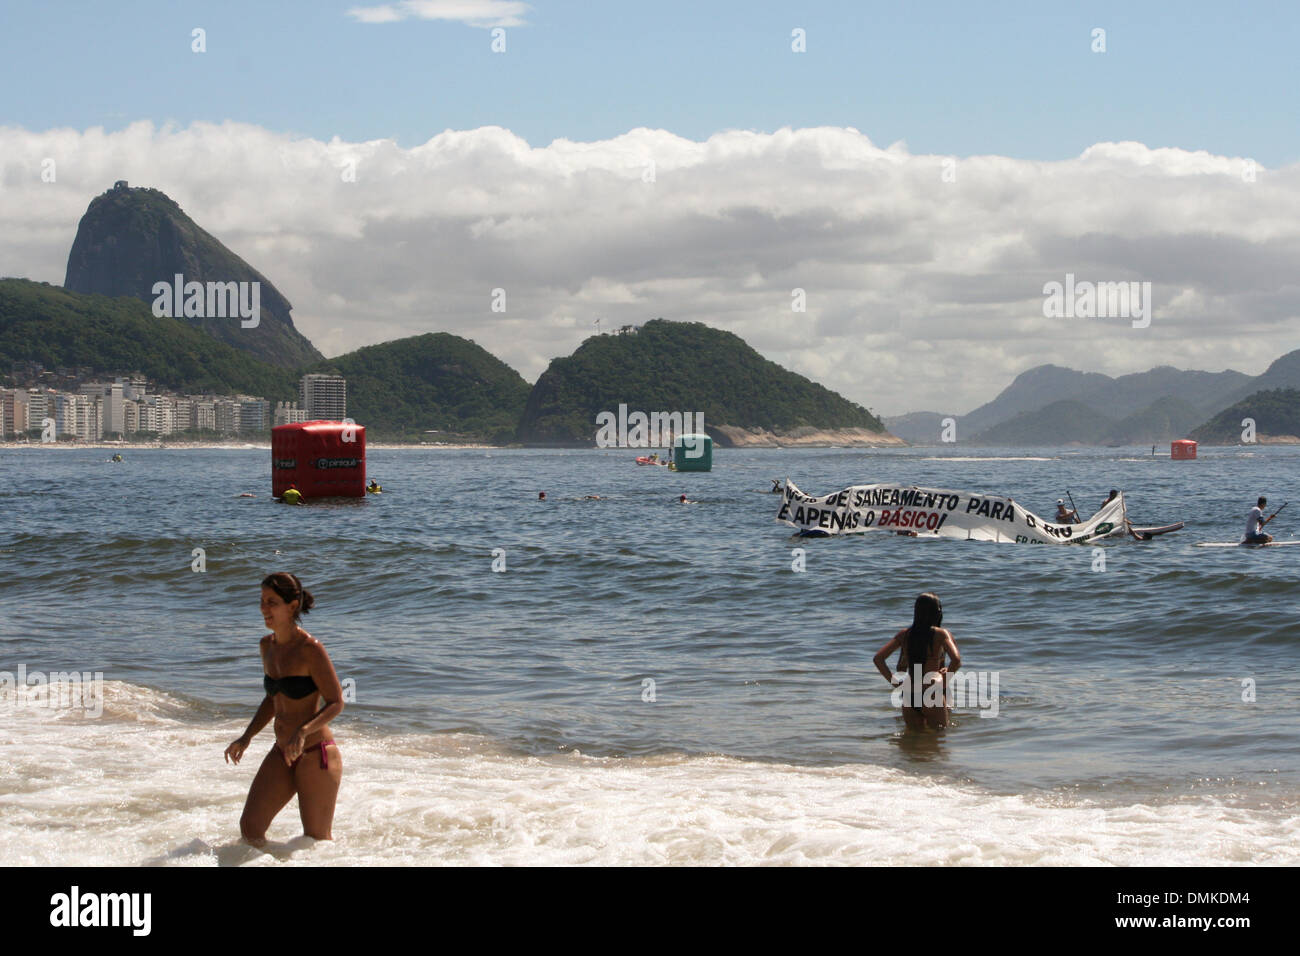 La plage de Copacabana, Rio de Janeiro, Brésil, 14 décembre 2013. Les activistes de la 'Jungle Battiari Saneamento do' (l'été de l'assainissement) ouvrir une campagne bannière dans la mer au cours de la 'Roi et Reine de la mer' tournoi de natation en eau libre. Ils demandent un plan d'assainissement non gouvernementales qui englobe toute la ville. Crédit : Maria Adelaide Silva/Alamy Live News Banque D'Images